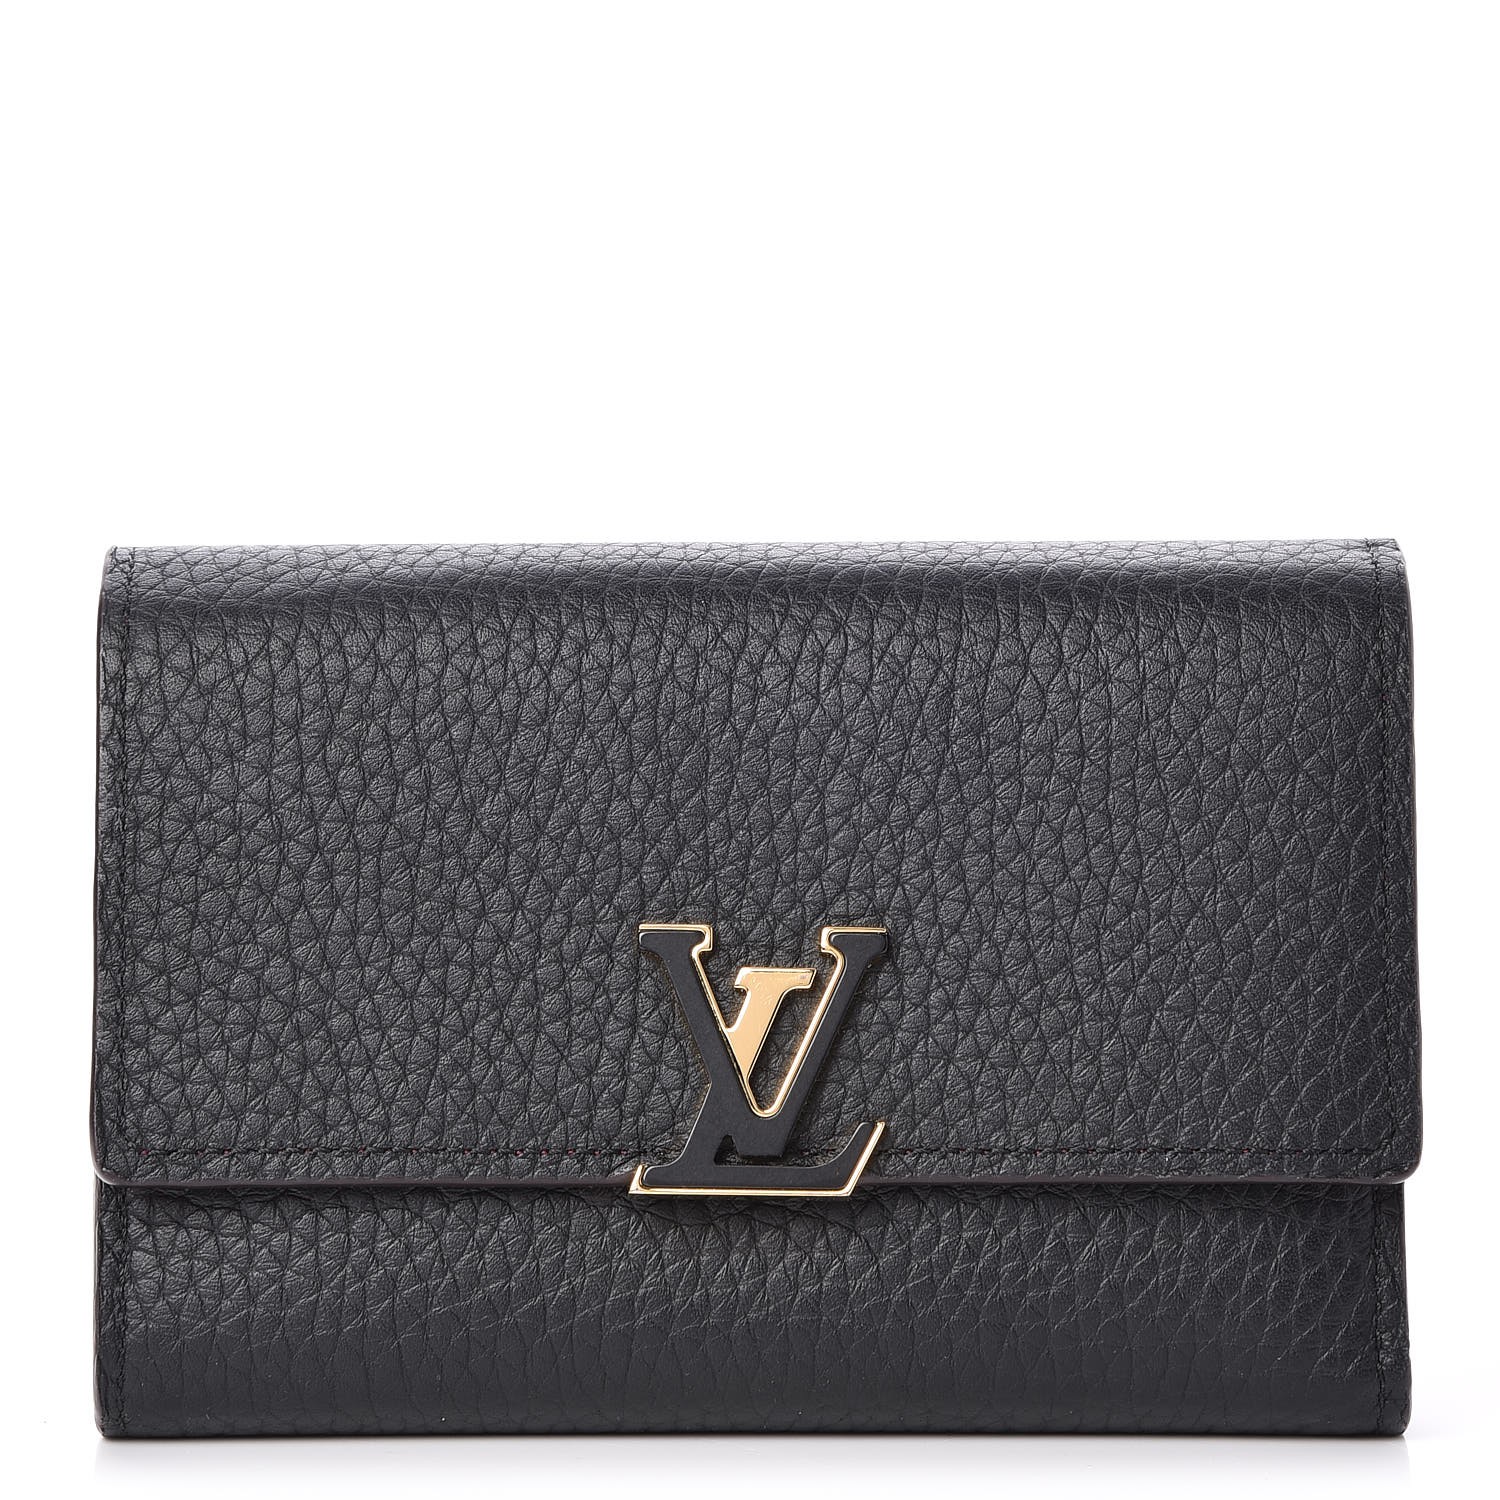 LOUIS VUITTON Taurillon Capucines Compact Wallet Black 307048